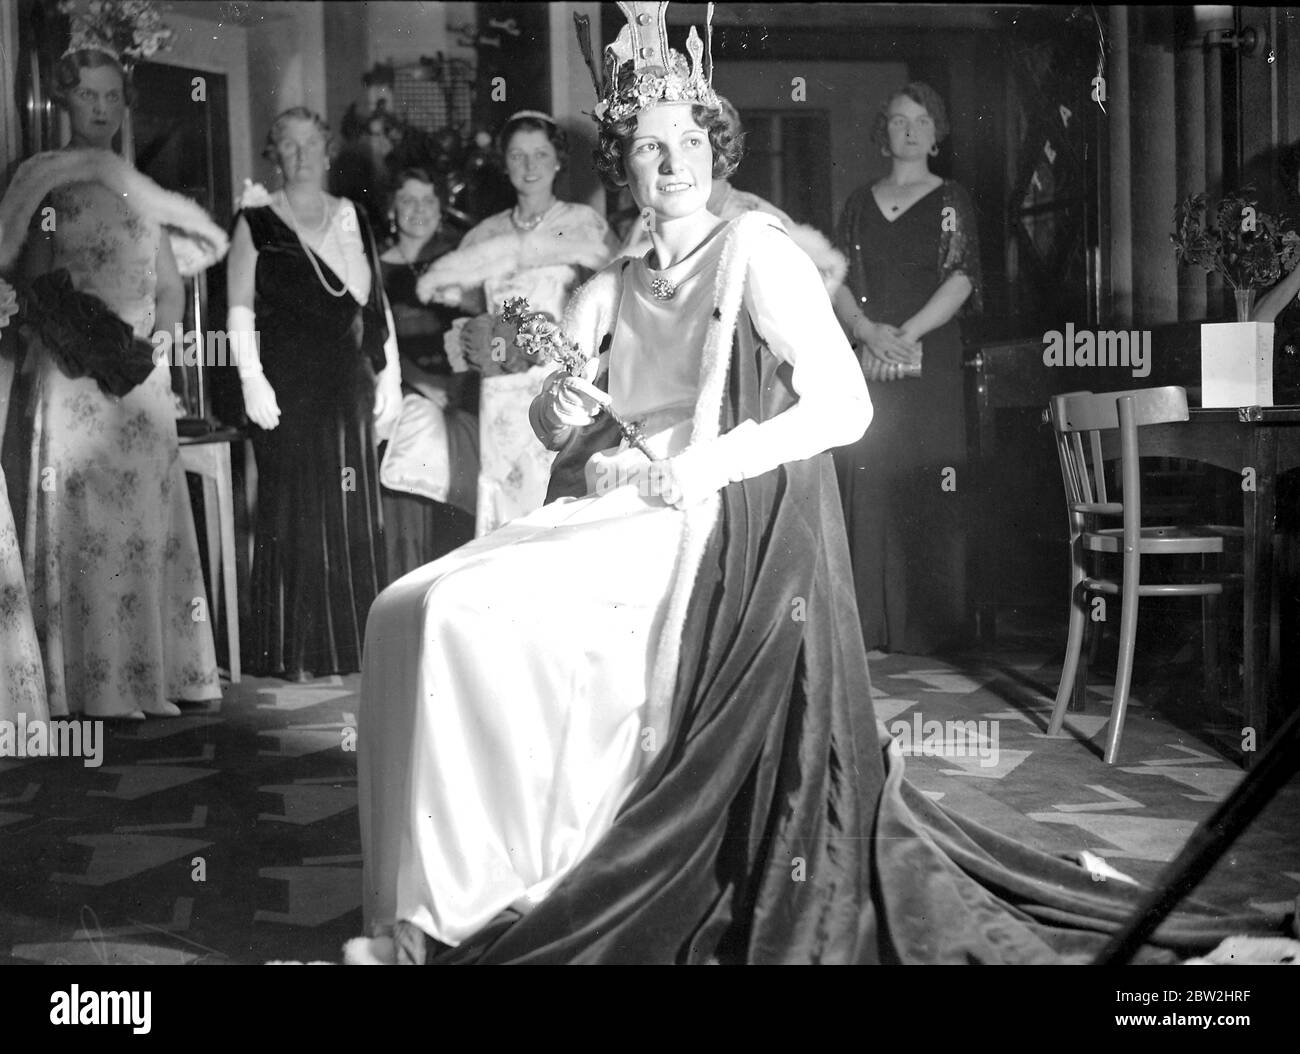 Carnaval d'Eltham : cérémonie de couronnement de la reine de carnaval. 1934 Banque D'Images